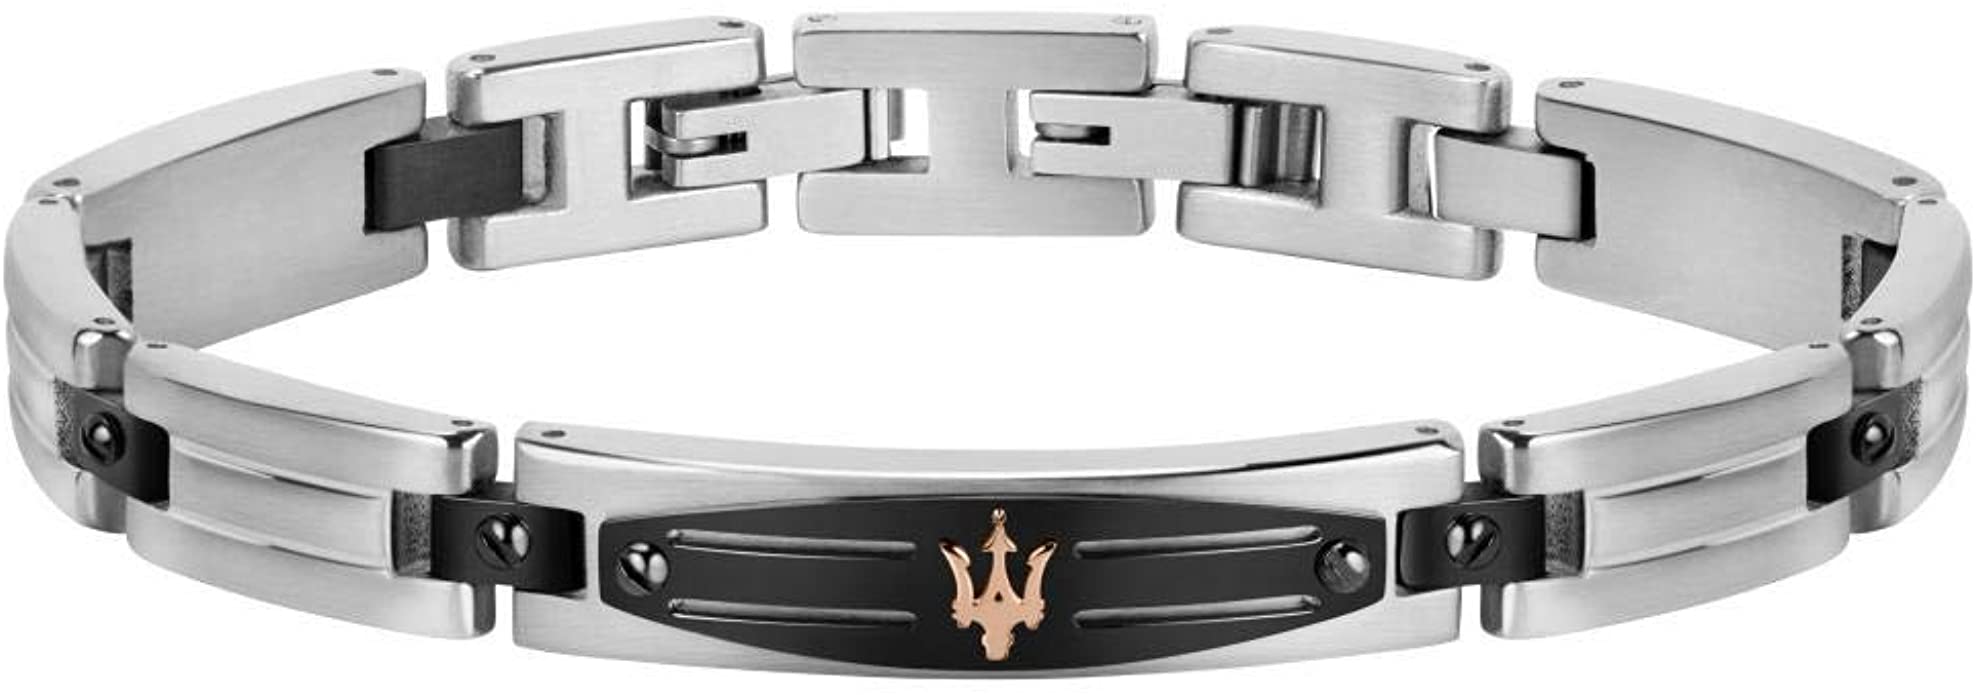 Bracelet pour homme, Collection MASERATI JEWELS, en Acier, PVD canon, PVD or rose, PVD noir - JM419ARY03 